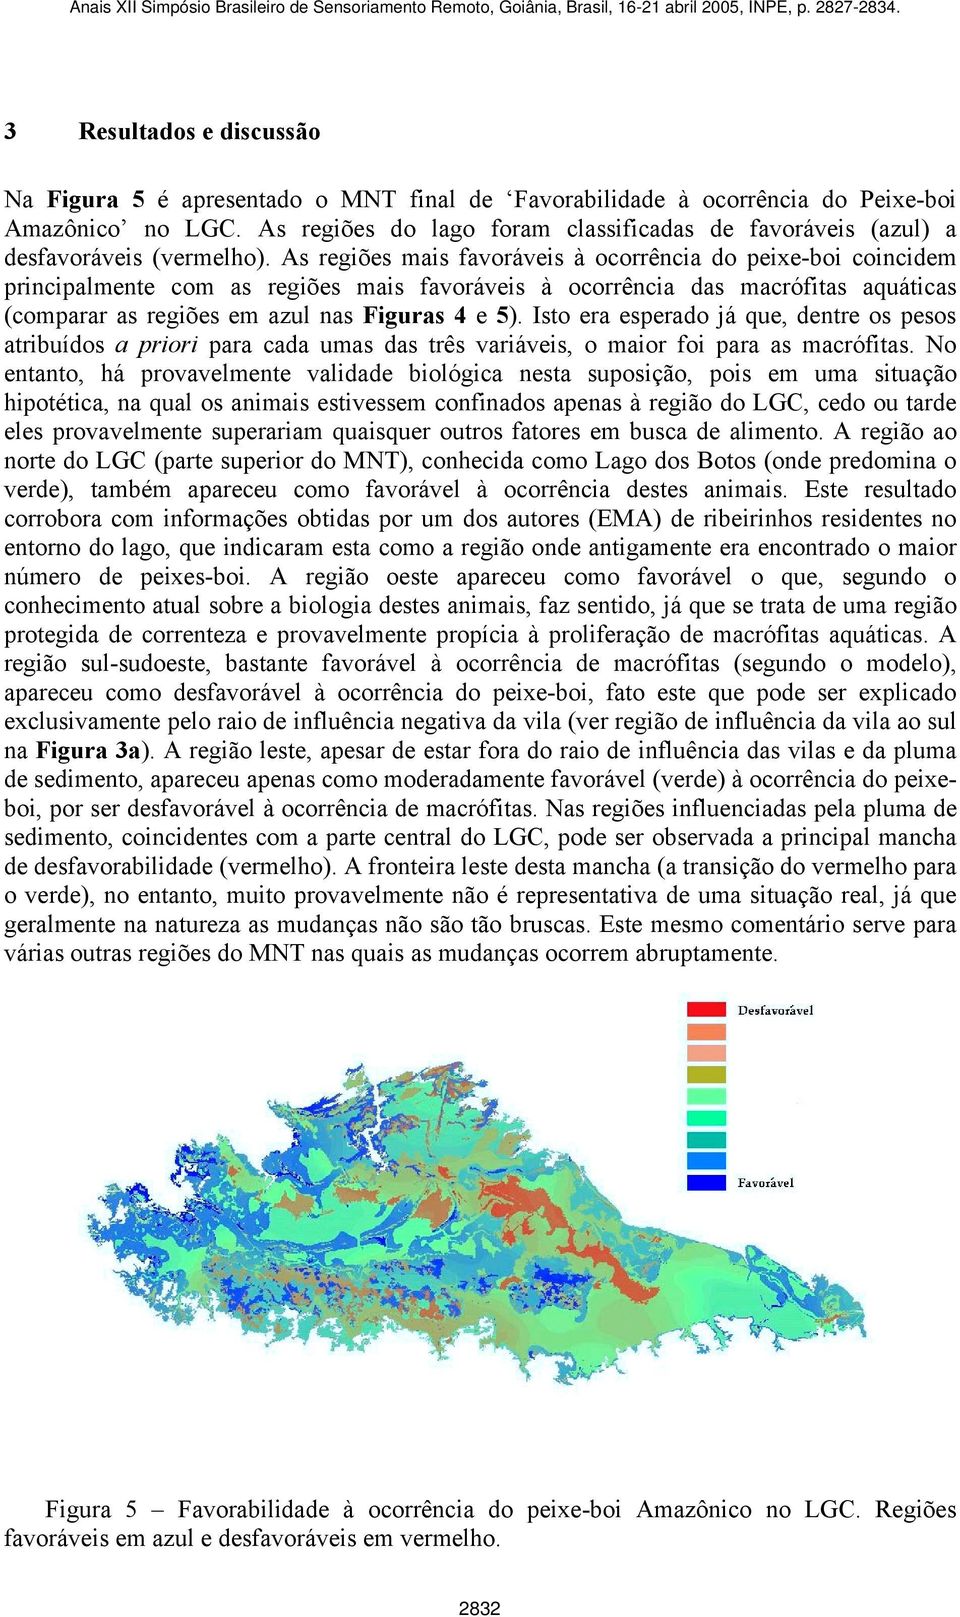 As regiões mais favoráveis à ocorrência do peixe-boi coincidem principalmente com as regiões mais favoráveis à ocorrência das macrófitas aquáticas (comparar as regiões em azul nas Figuras 4 e 5).